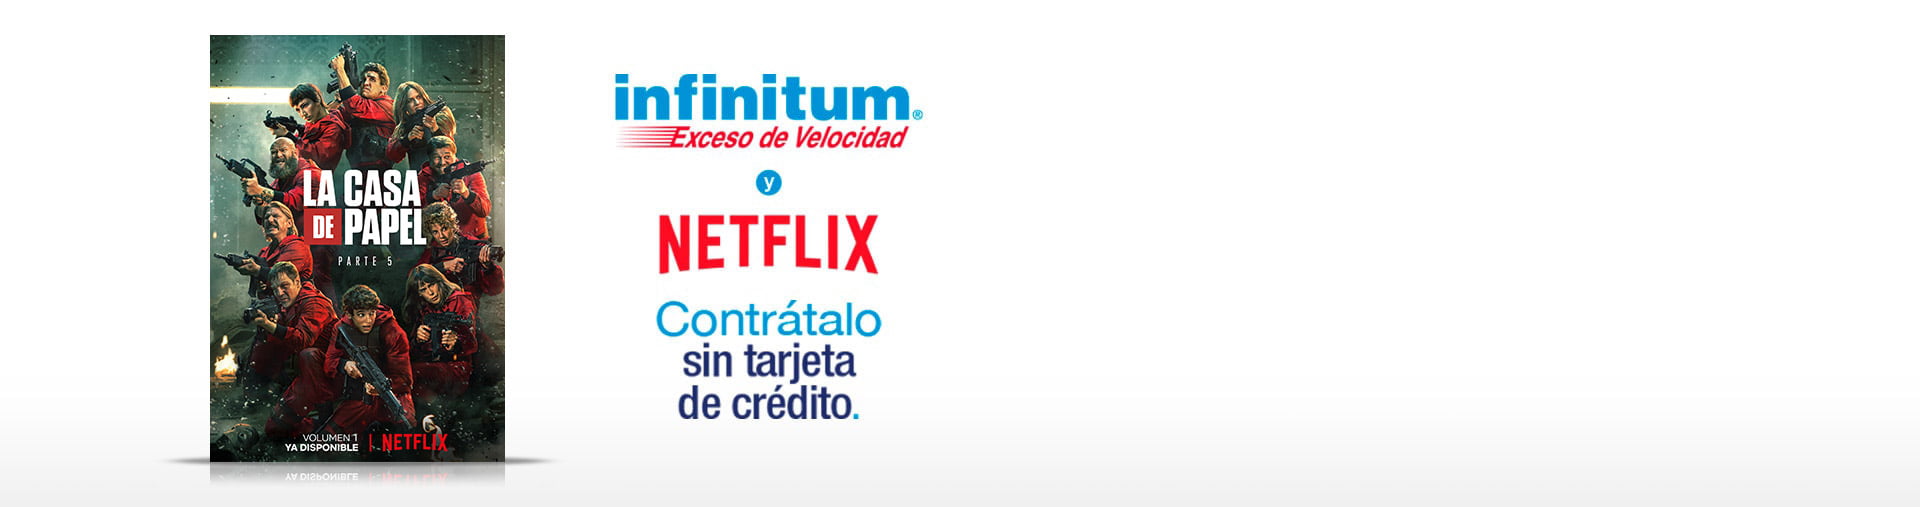 Infinitum + Netflix